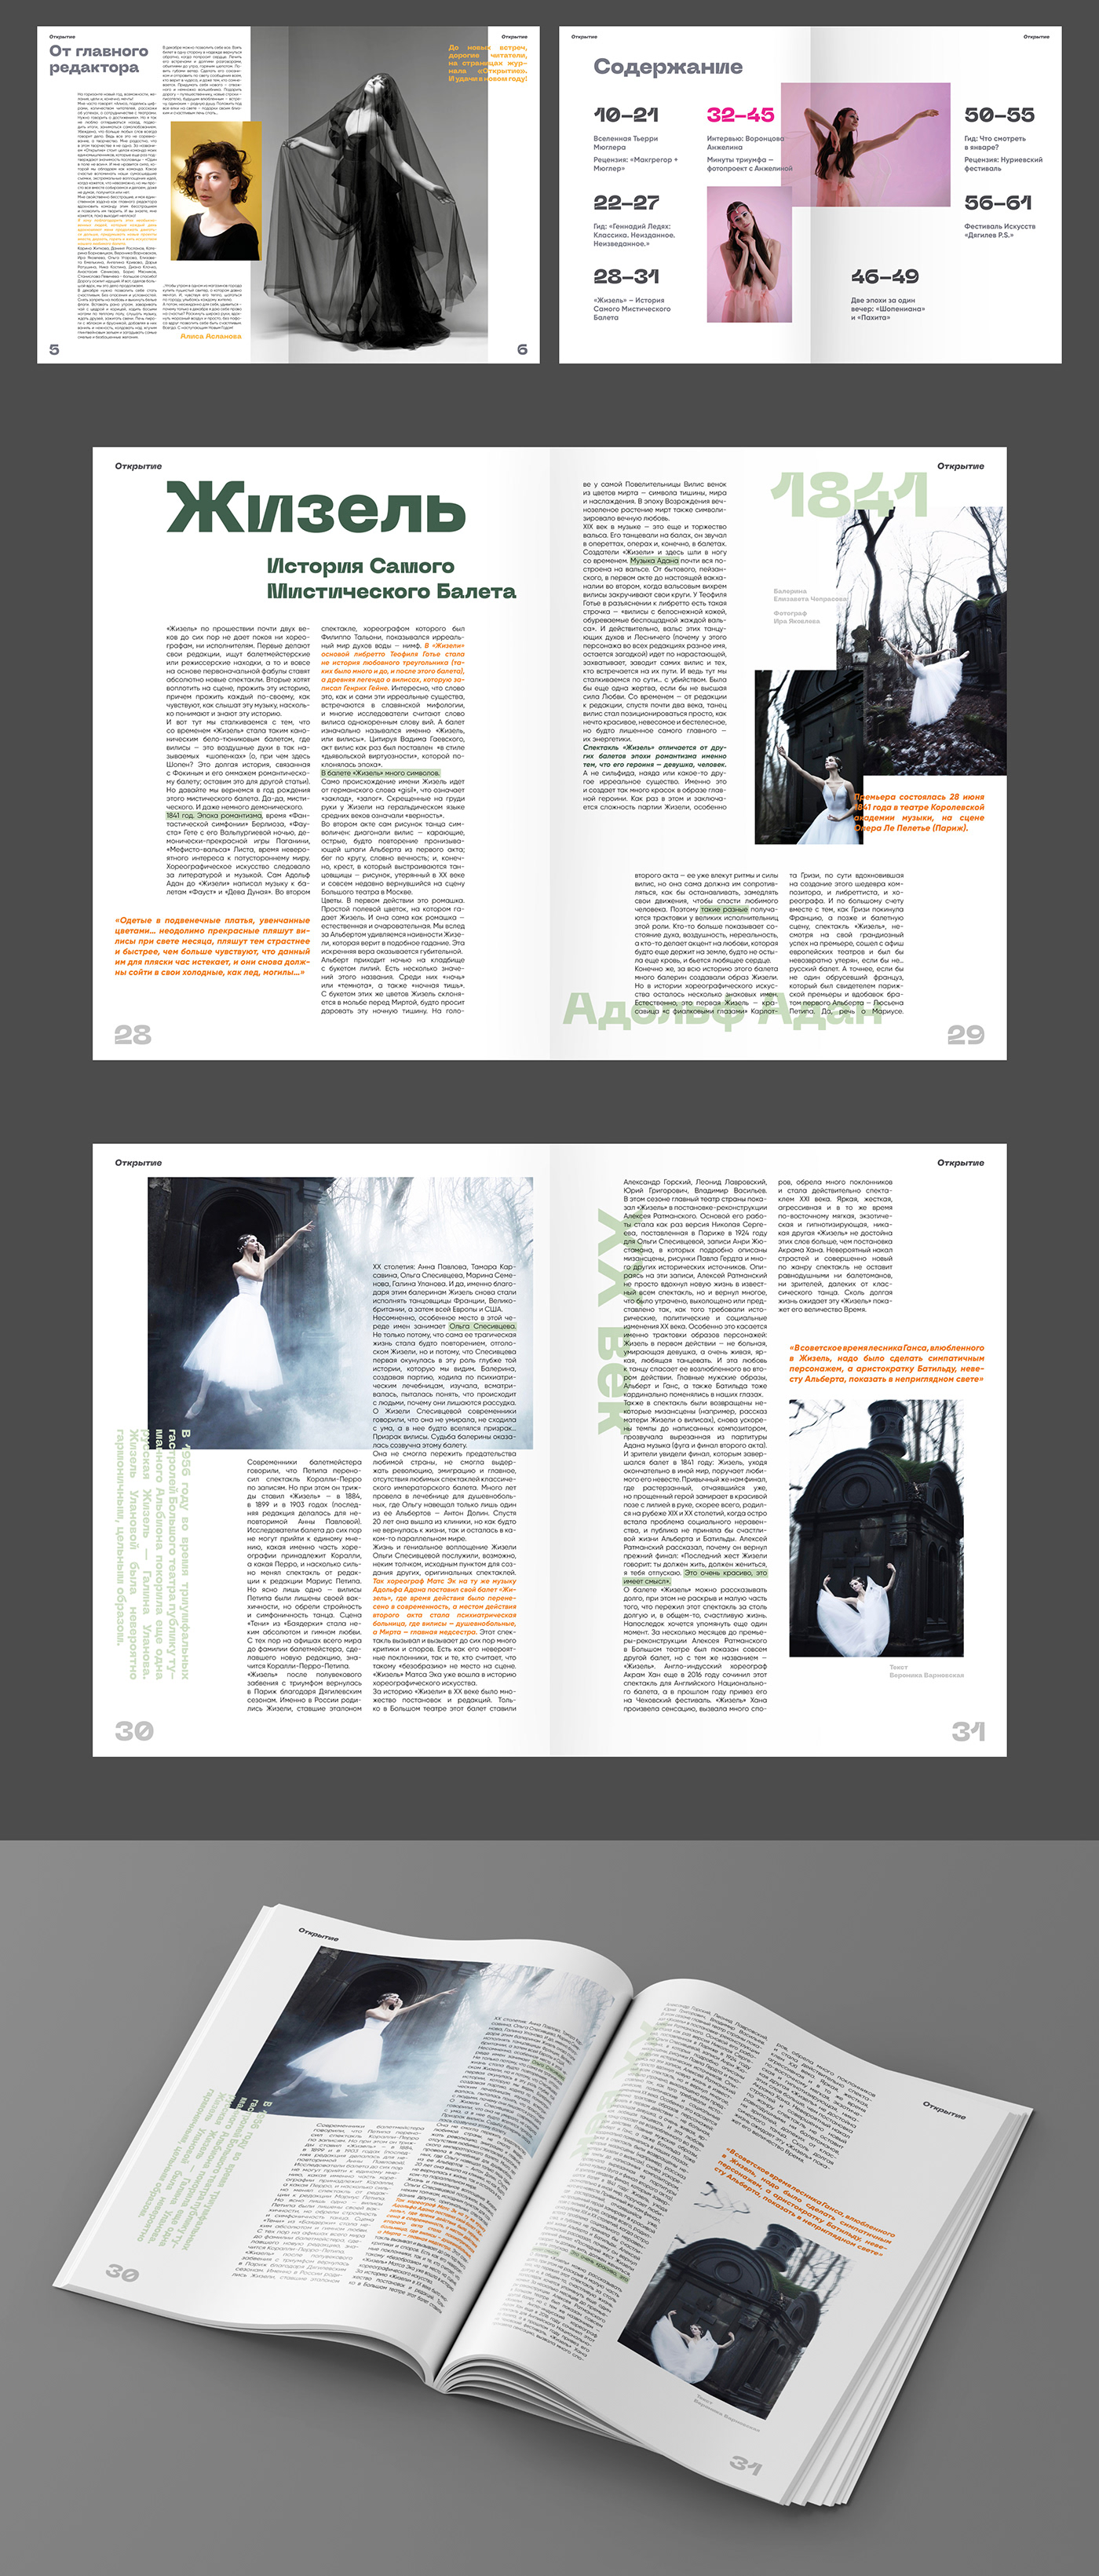 InDesign Layout Design magazine Magazine Cover Magazine design magazine layout